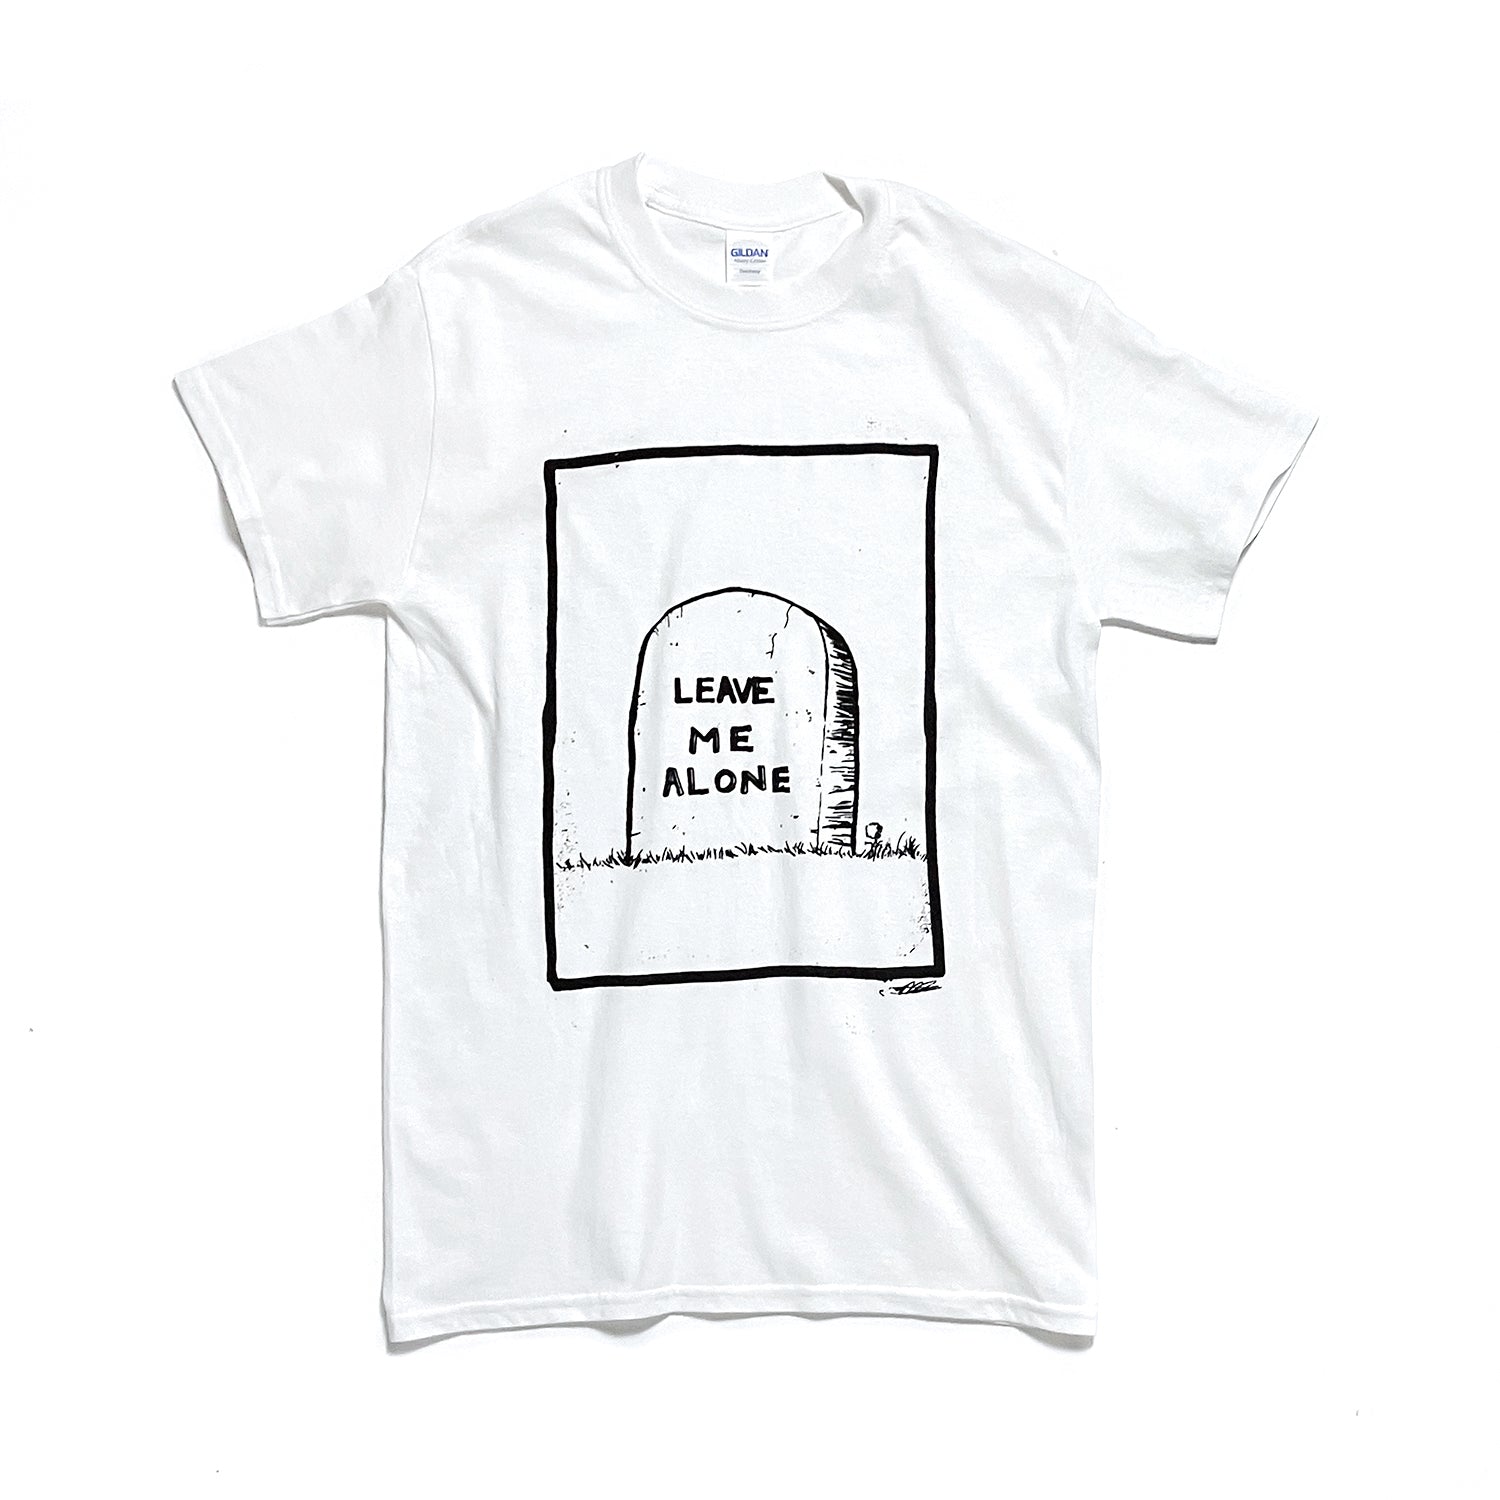 Grave t-shirt